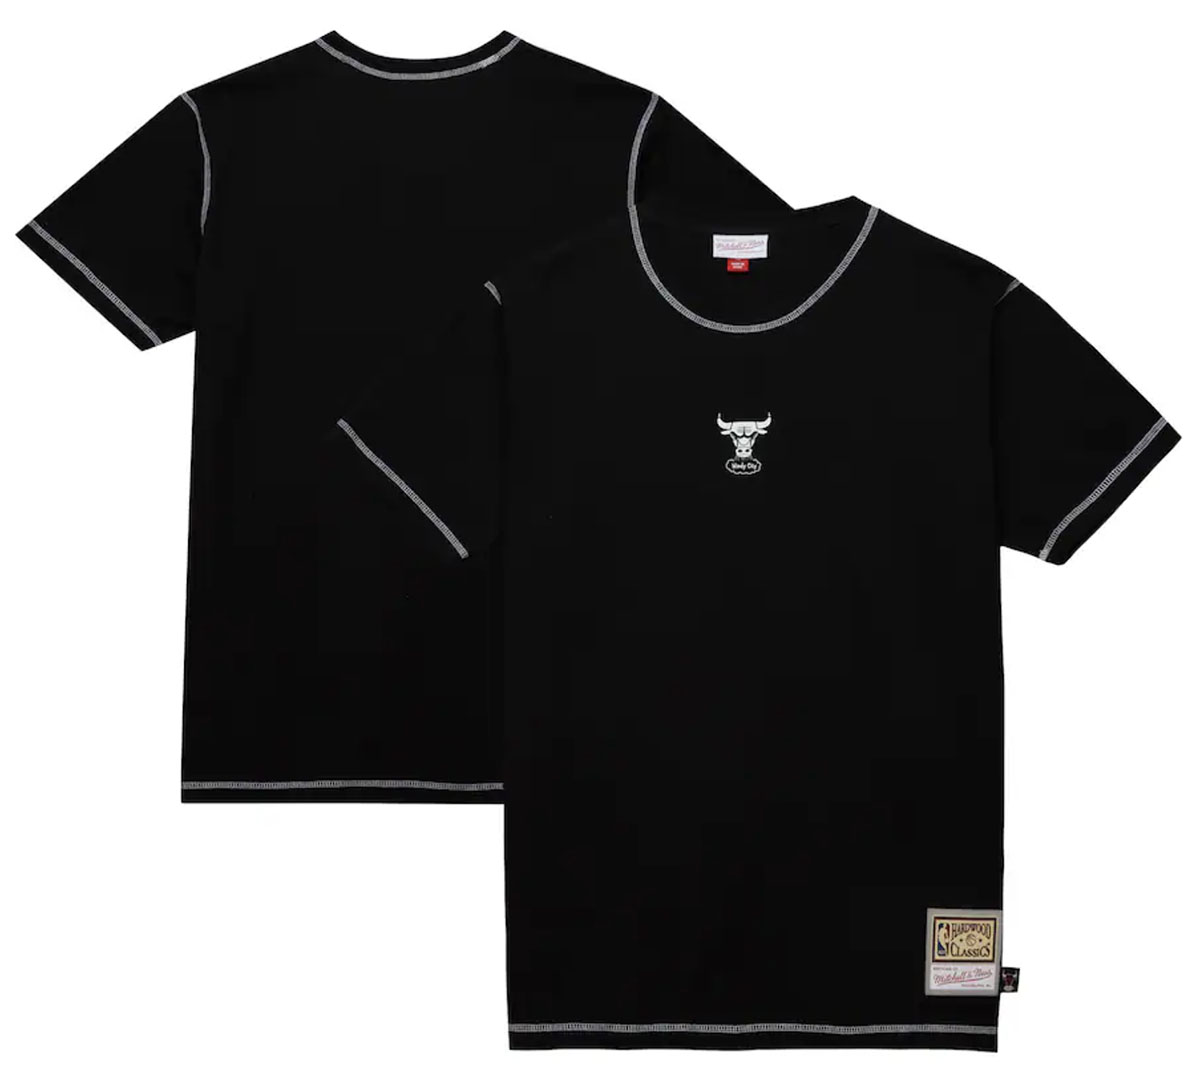  Chicago-Bulls-Mitchell-and-Ness-Black-White-Shirt